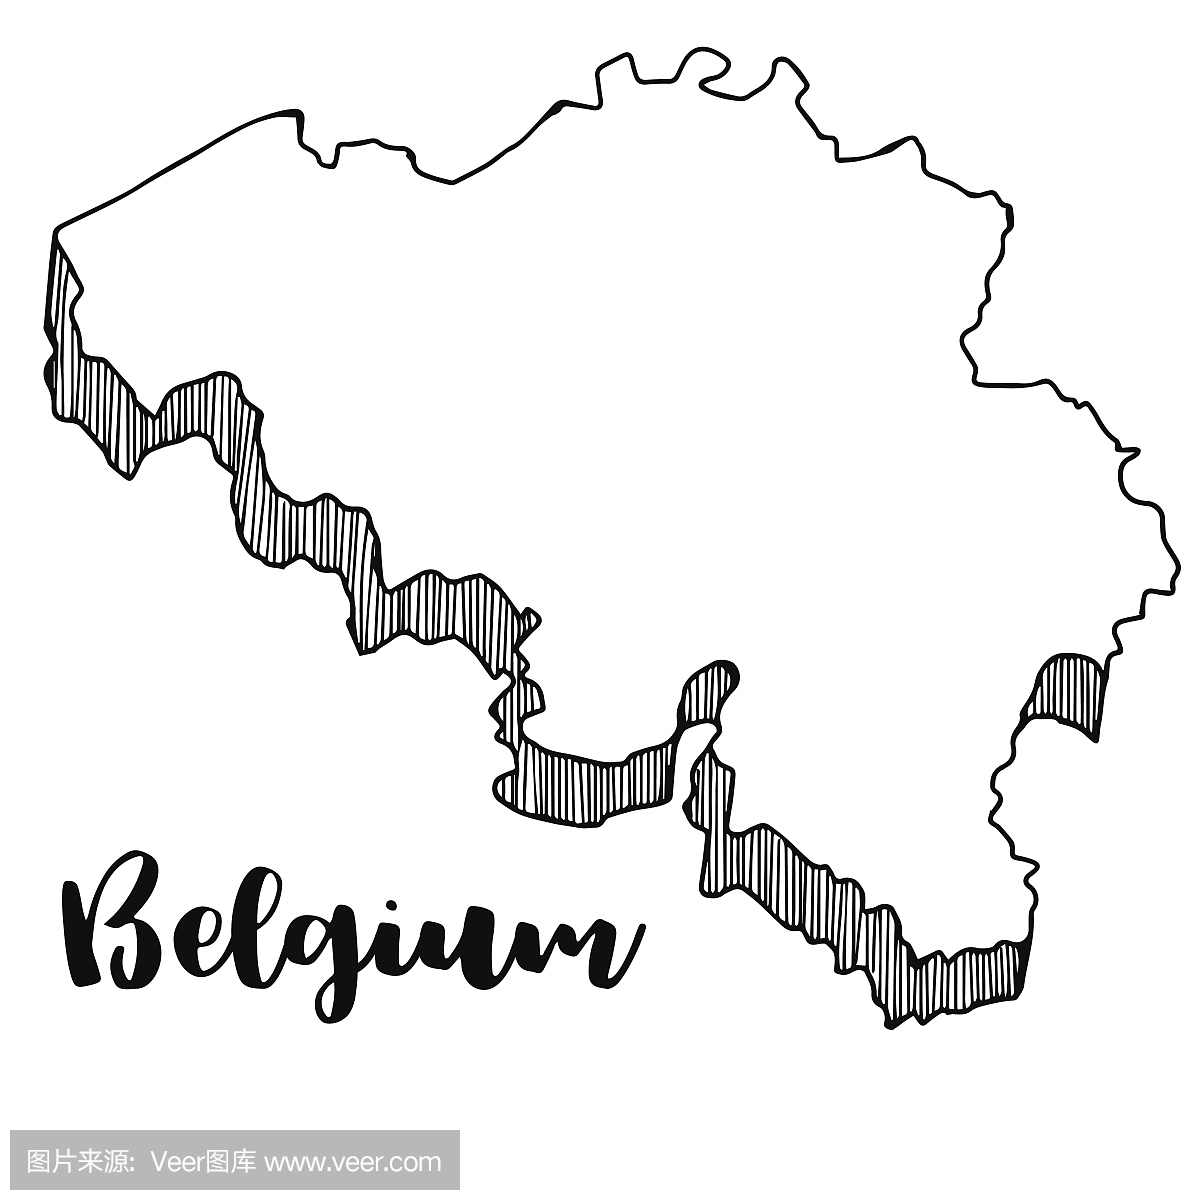 手画比利时地图,矢量图